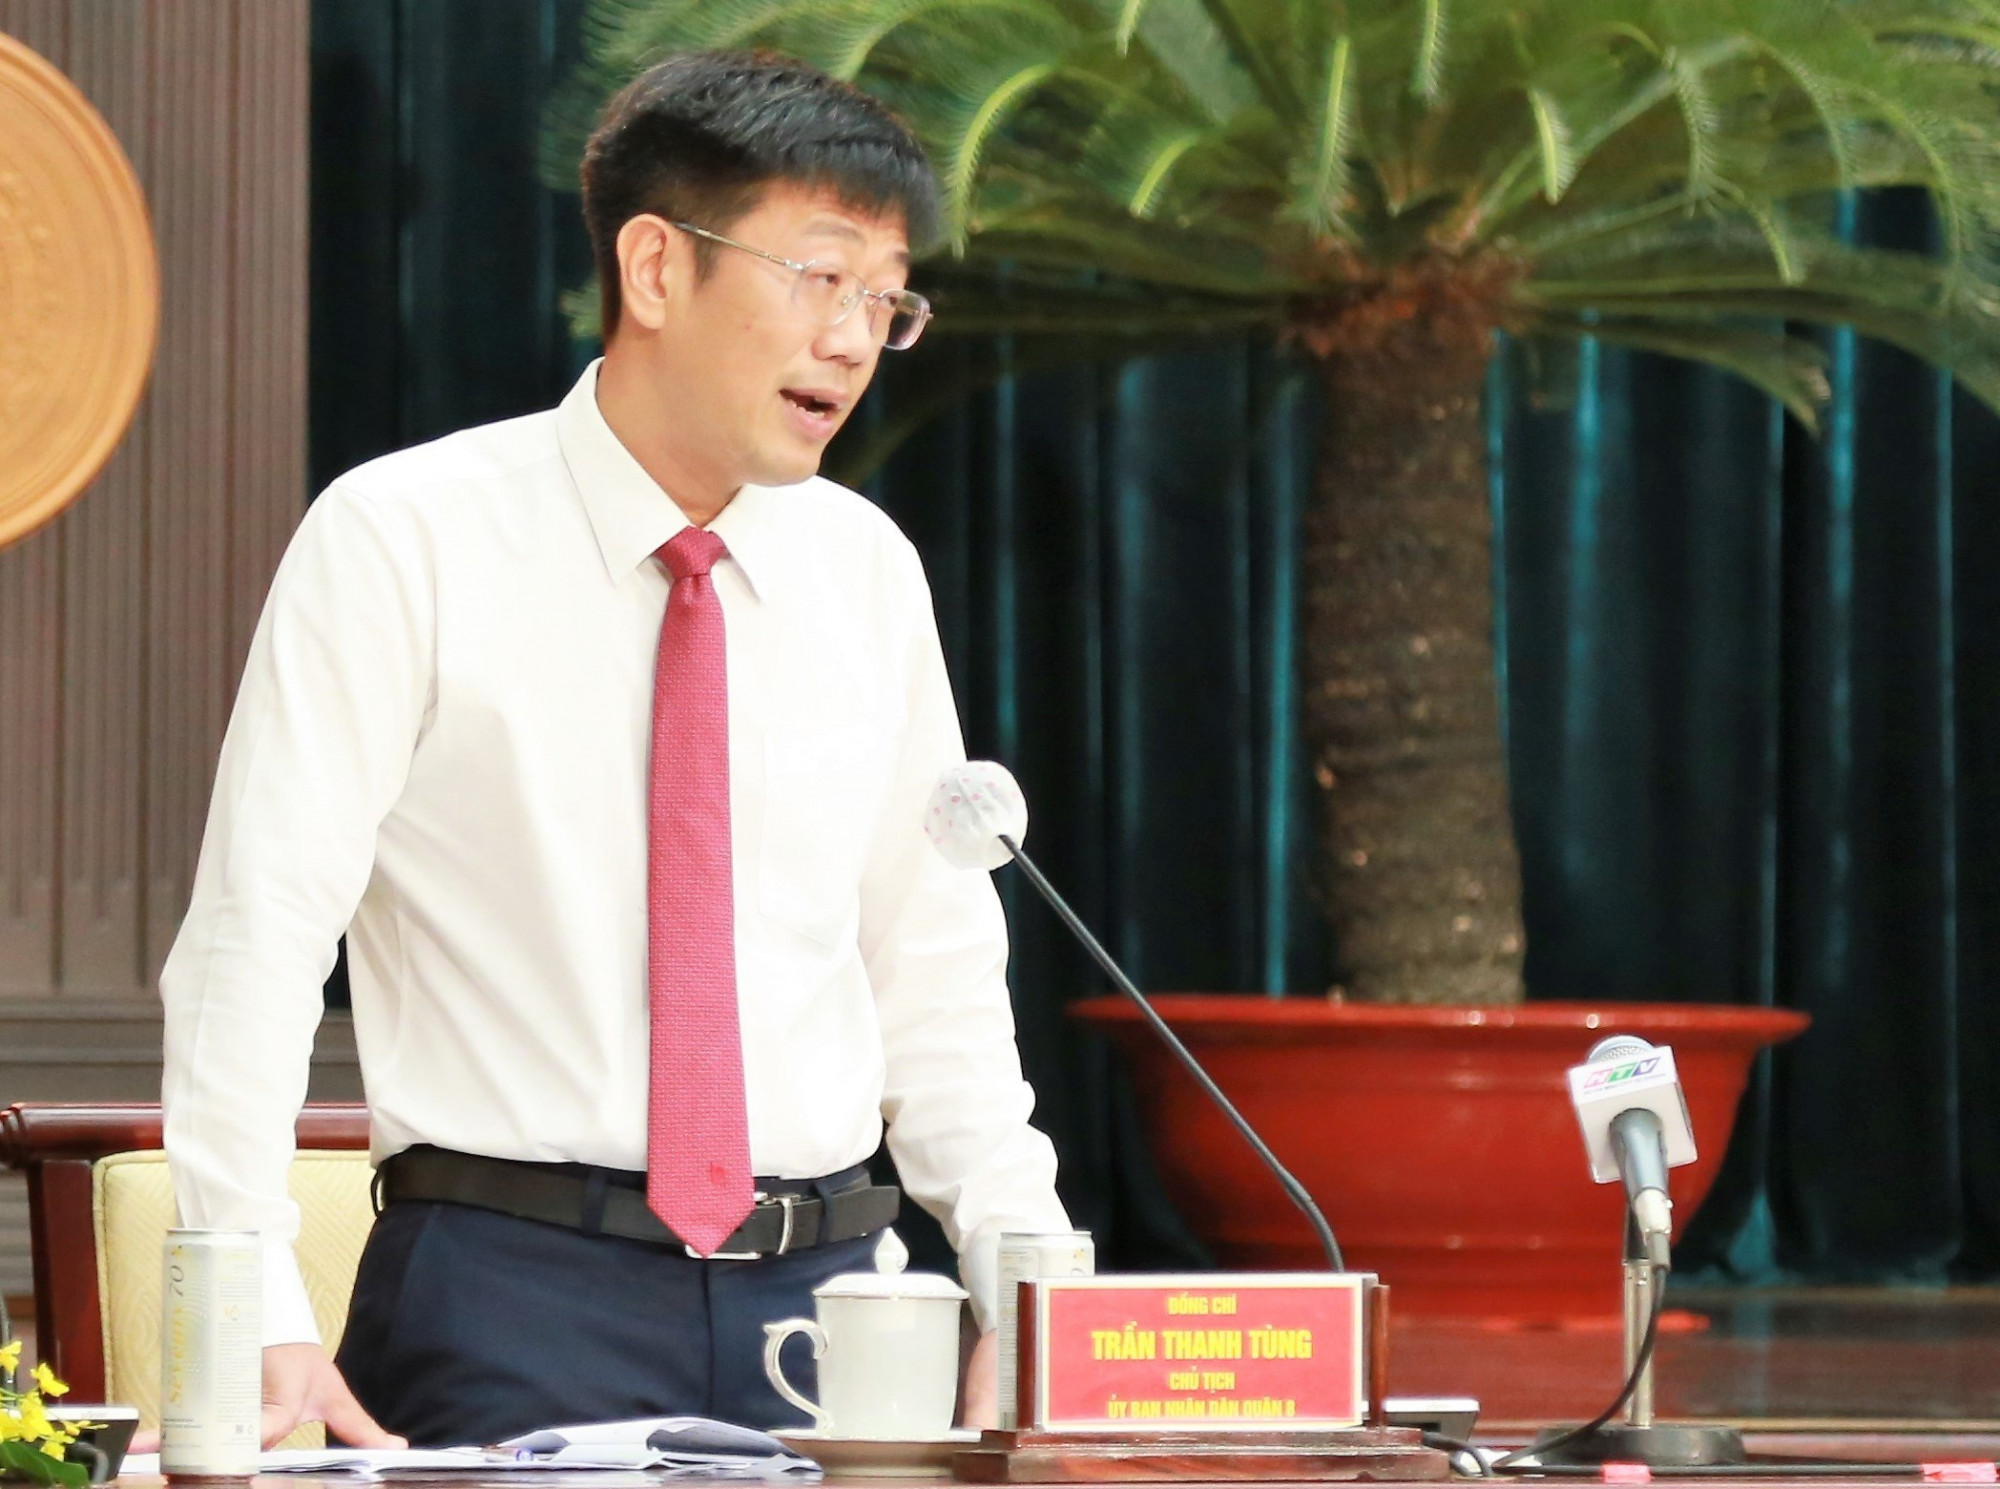 Chủ tịch UBND quận 8 Trần Thanh Tùng trả lời chất vấn về cải tạo, xây dựng lại nhà chung cư cũ. Ảnh: Quốc Ngọc